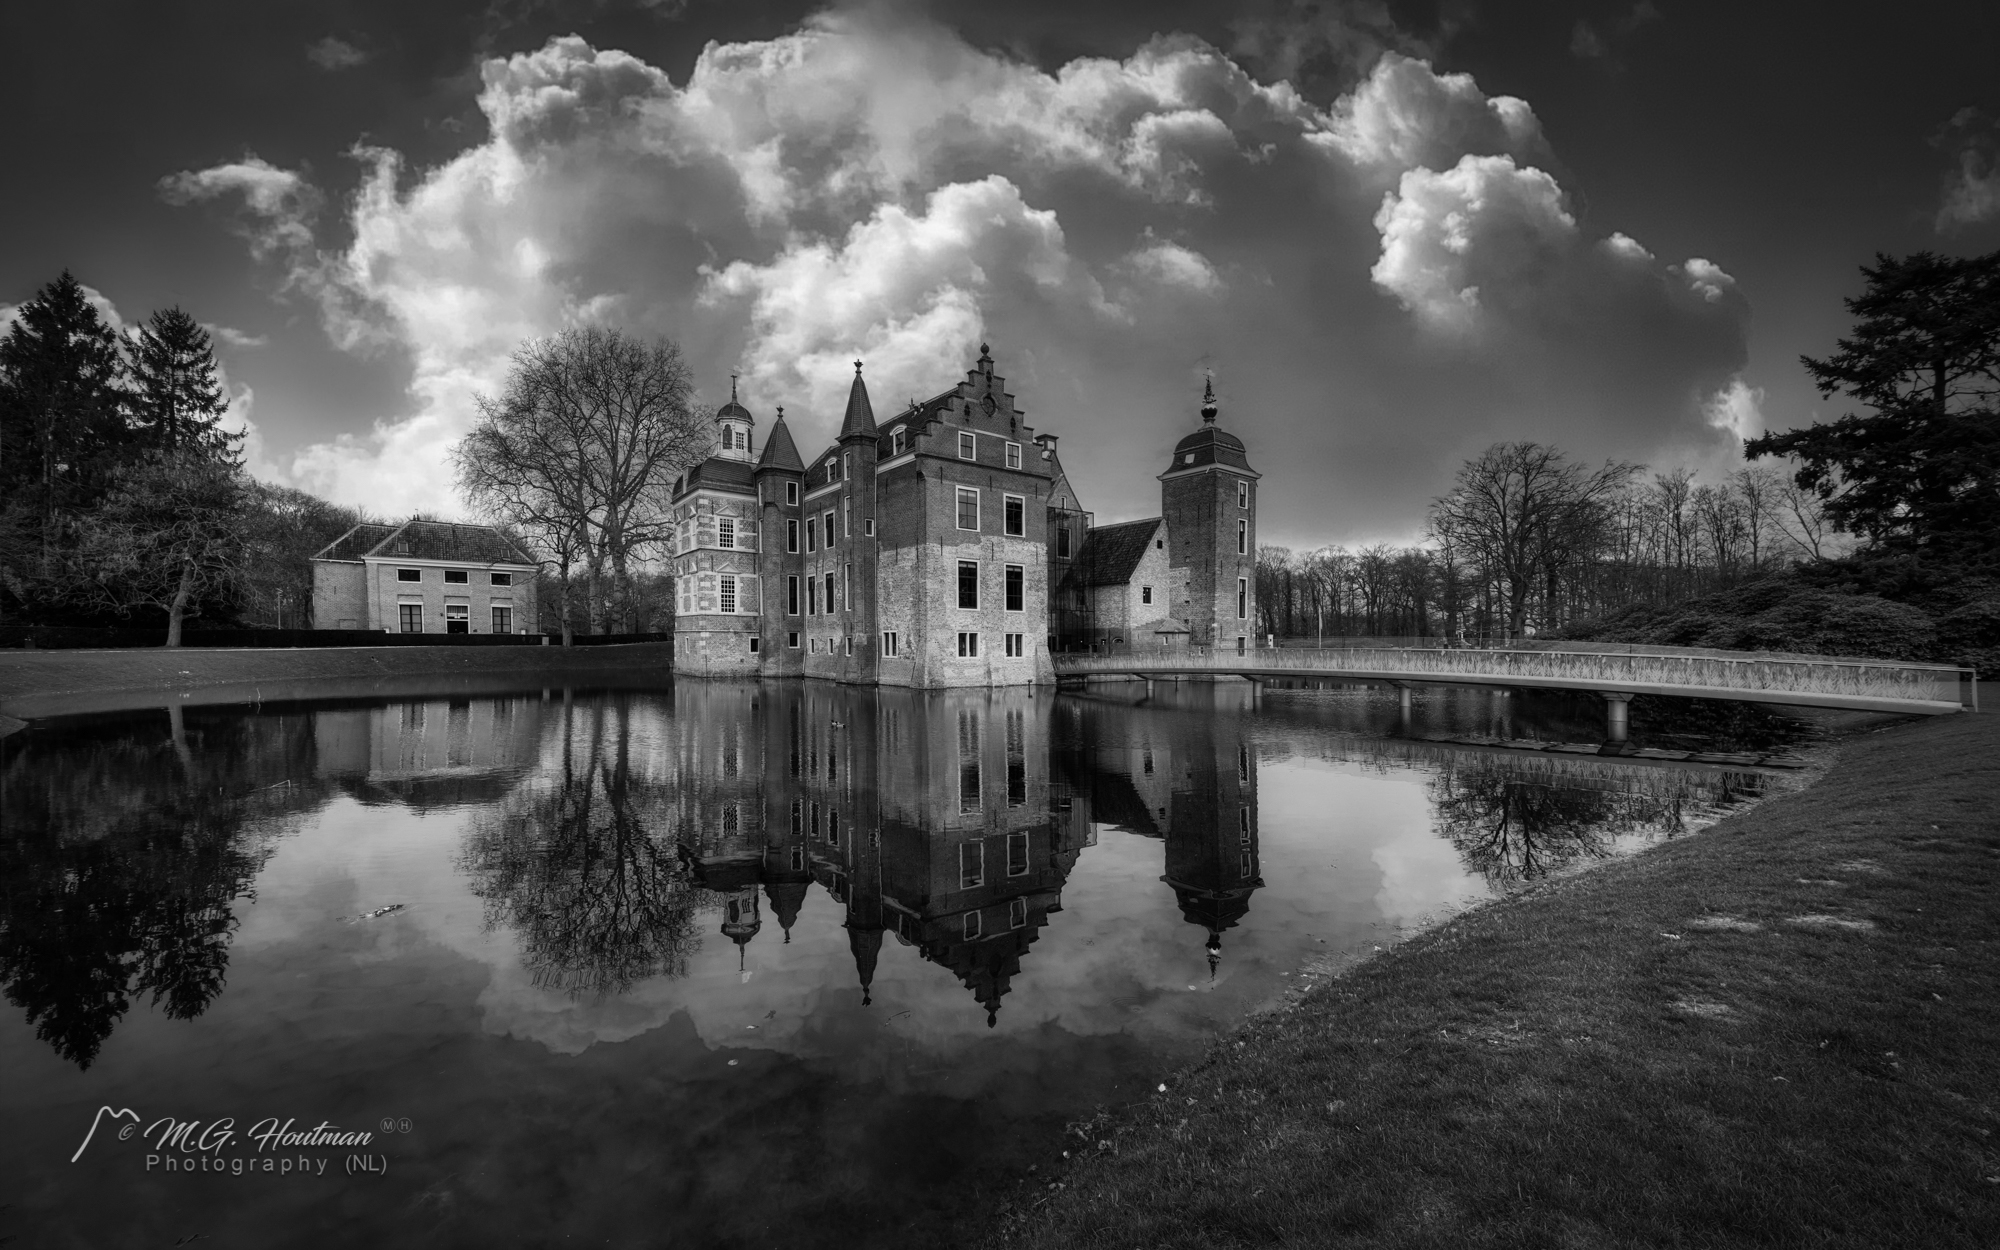 Huis Ruurlo is een kasteel en landgoed in de gemeente Berkelland, zuidelijk gelegen van het dorp Ruurlo, in de Nederlandse provincie Gelderland. Het is onderdeel van een sinds 2010 geregistreerd rijksbeschermd complex Historische Buitenplaats.